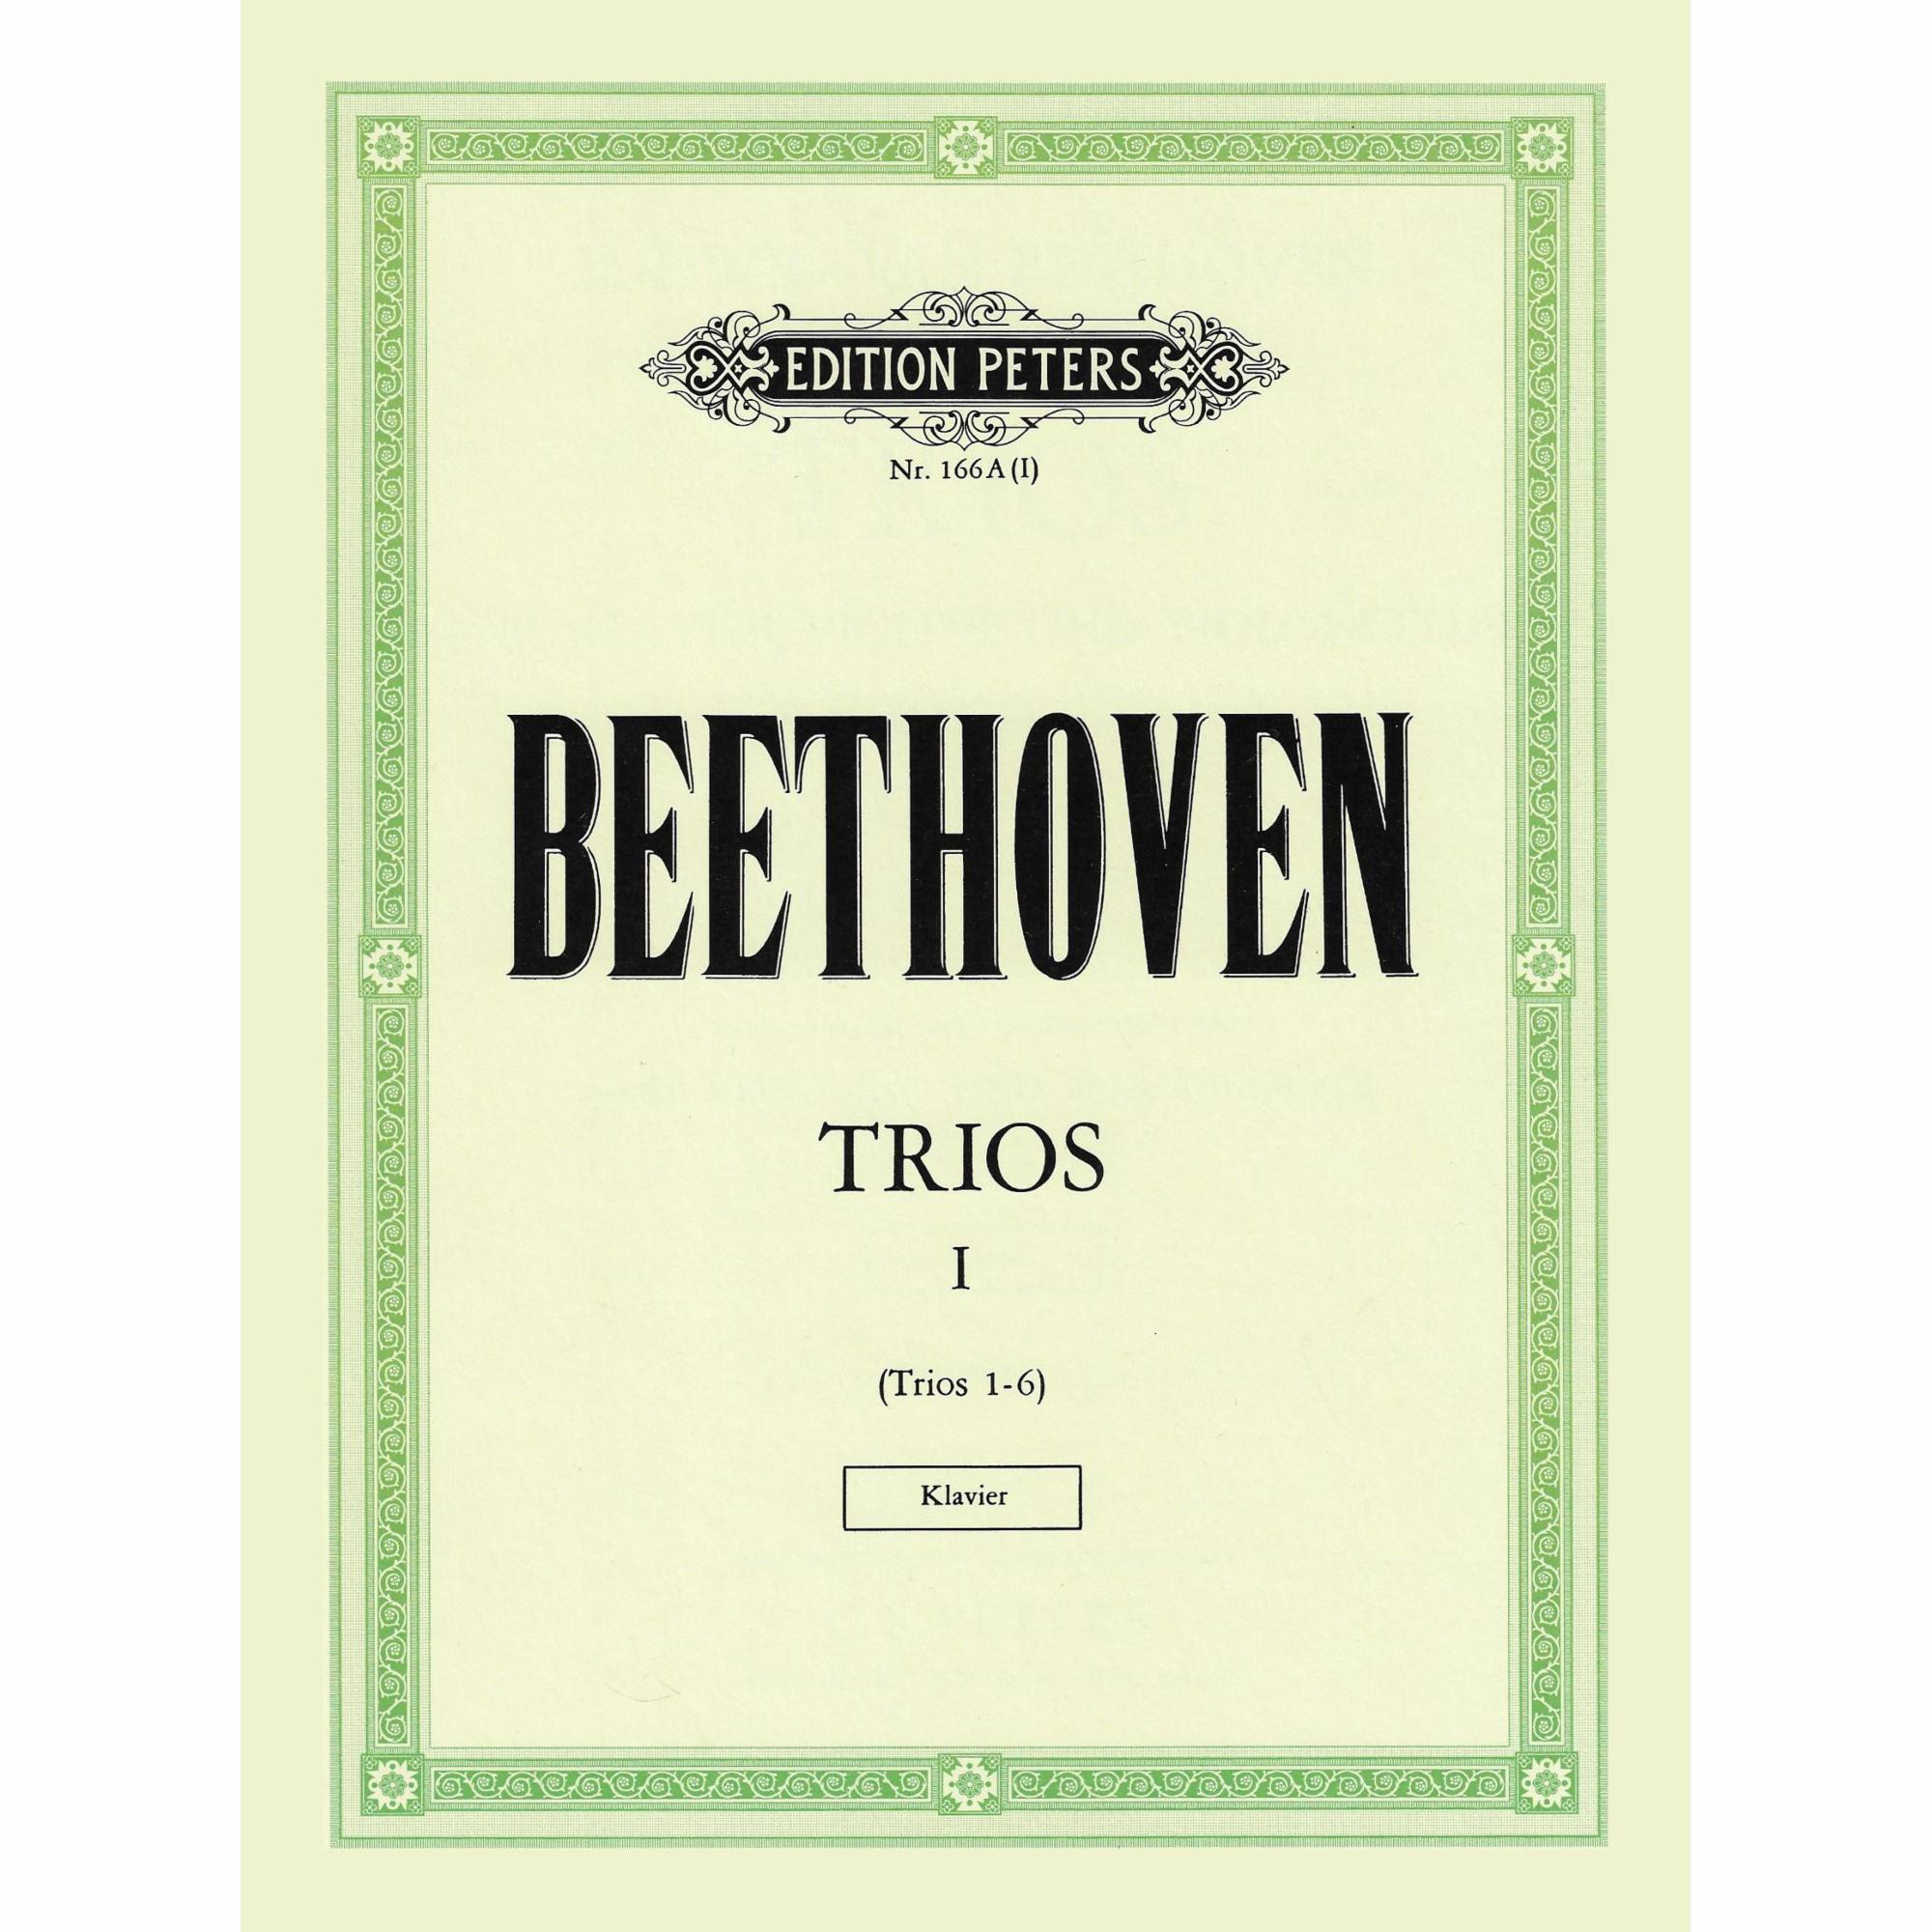 Beethoven -- Piano Trios, Vol. I